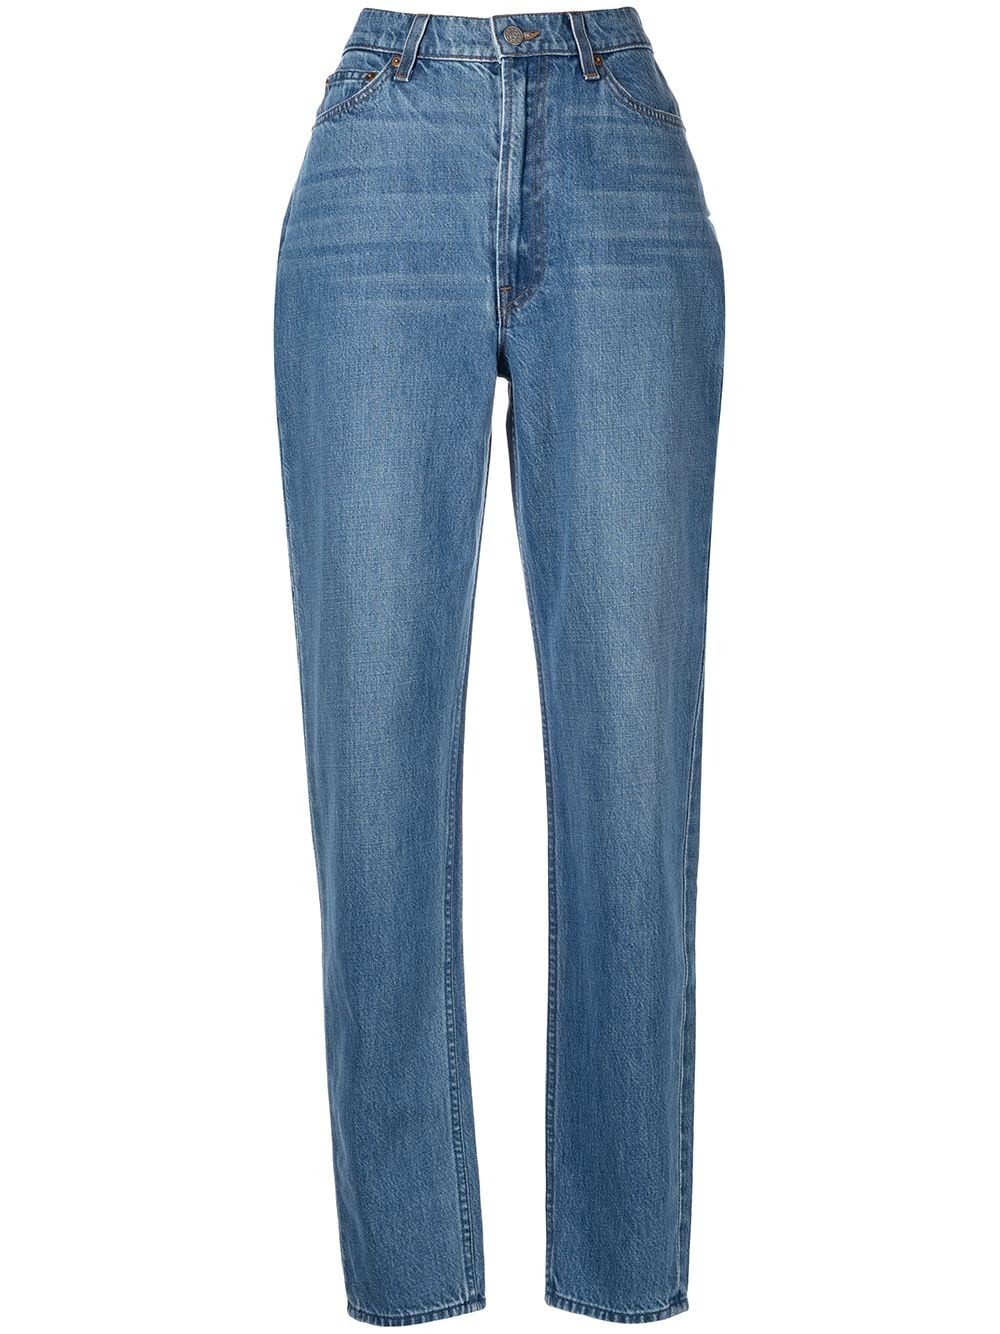 high-waisted denim jeans